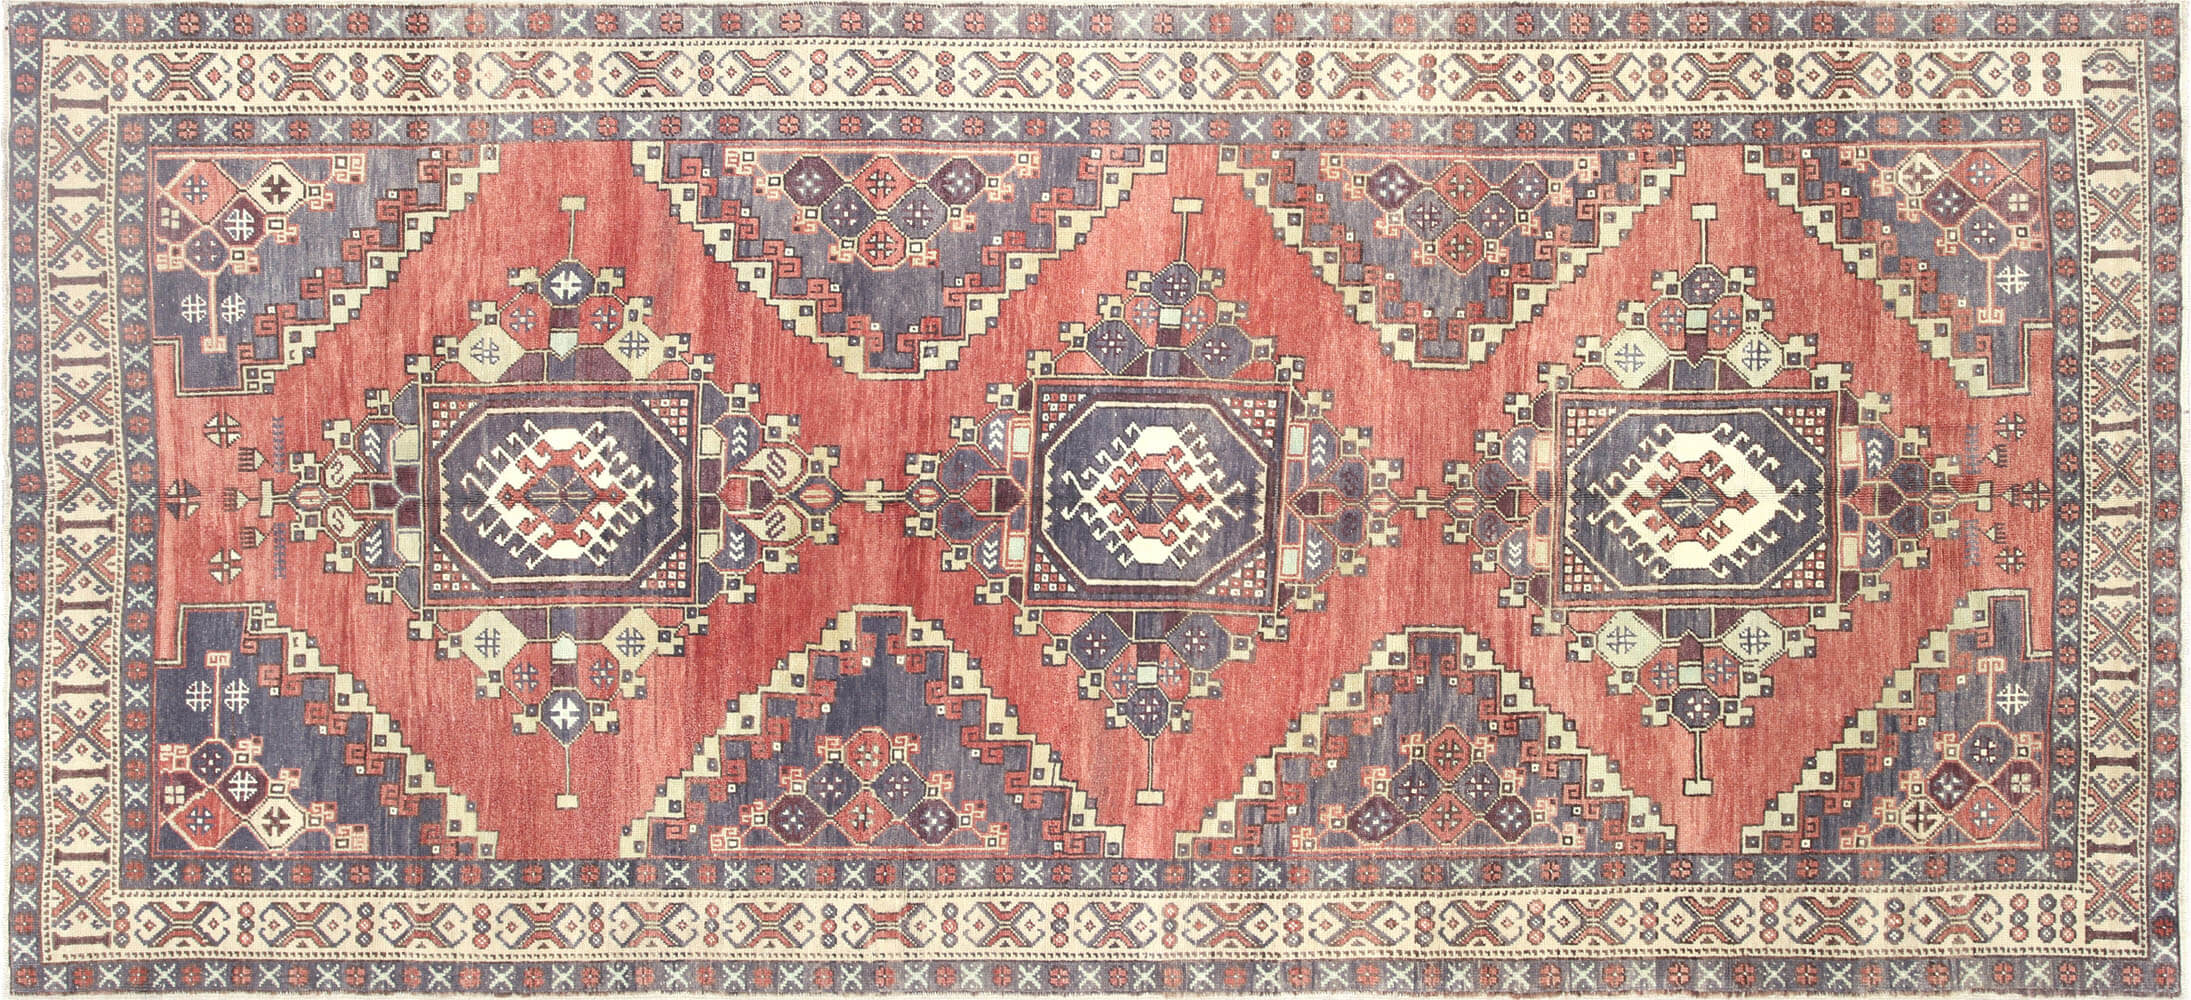 Vintage Turkish Oushak Carpet - 5'3" x 11'6"